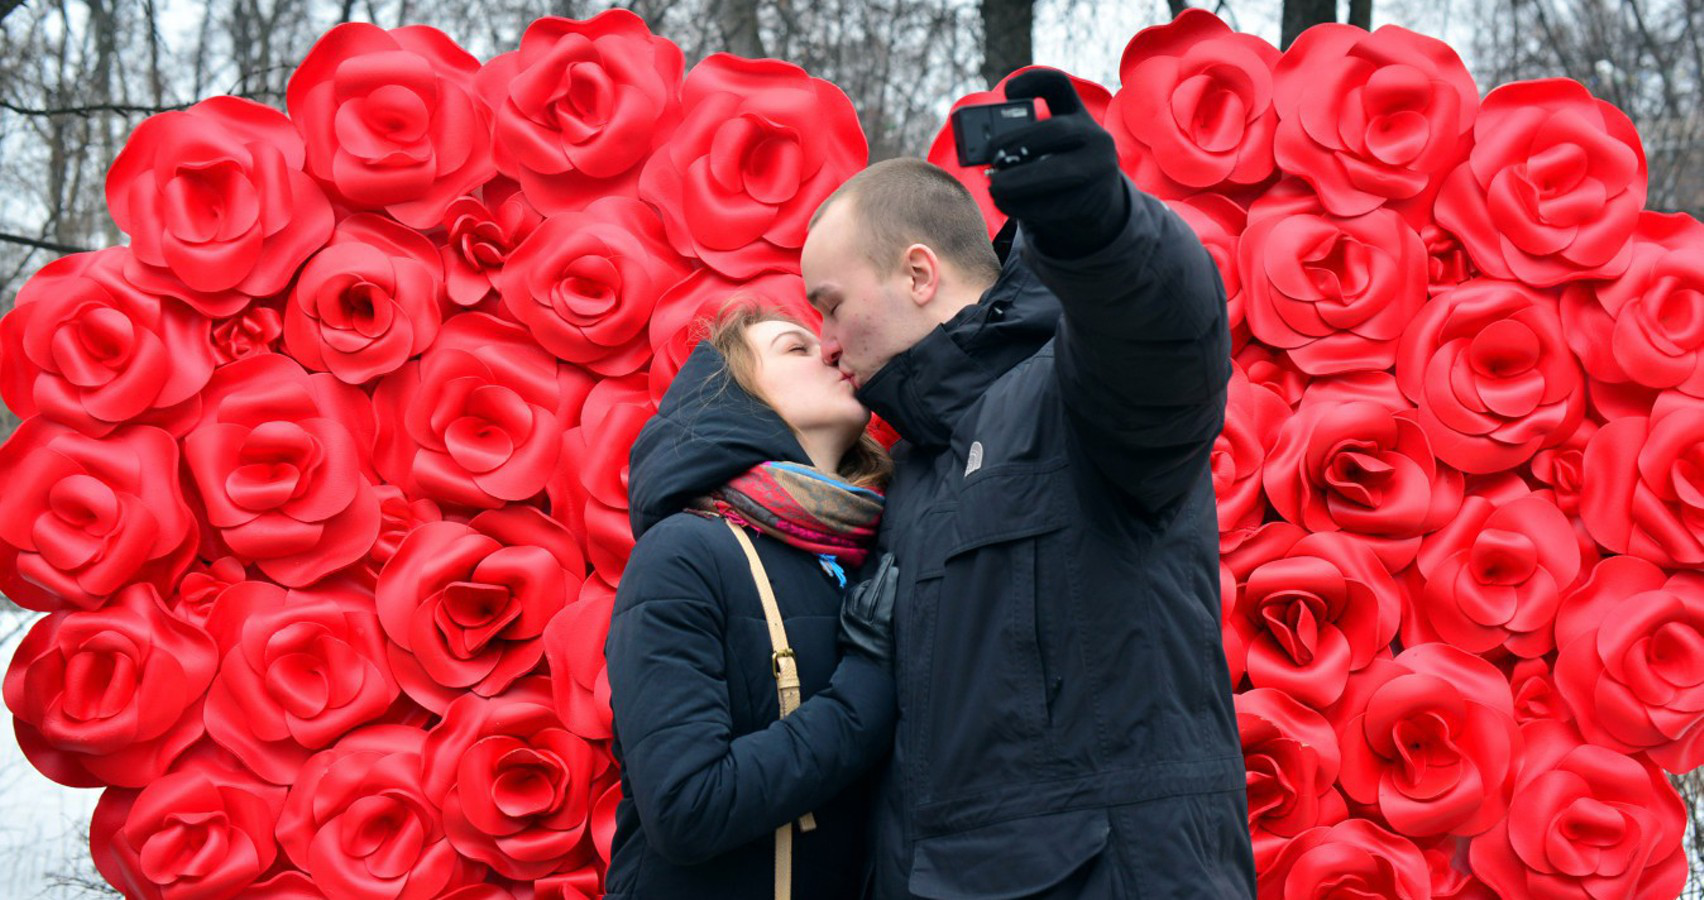 Понад половина українців планують дарувати подарунки на День святого Валентина - соцопитування